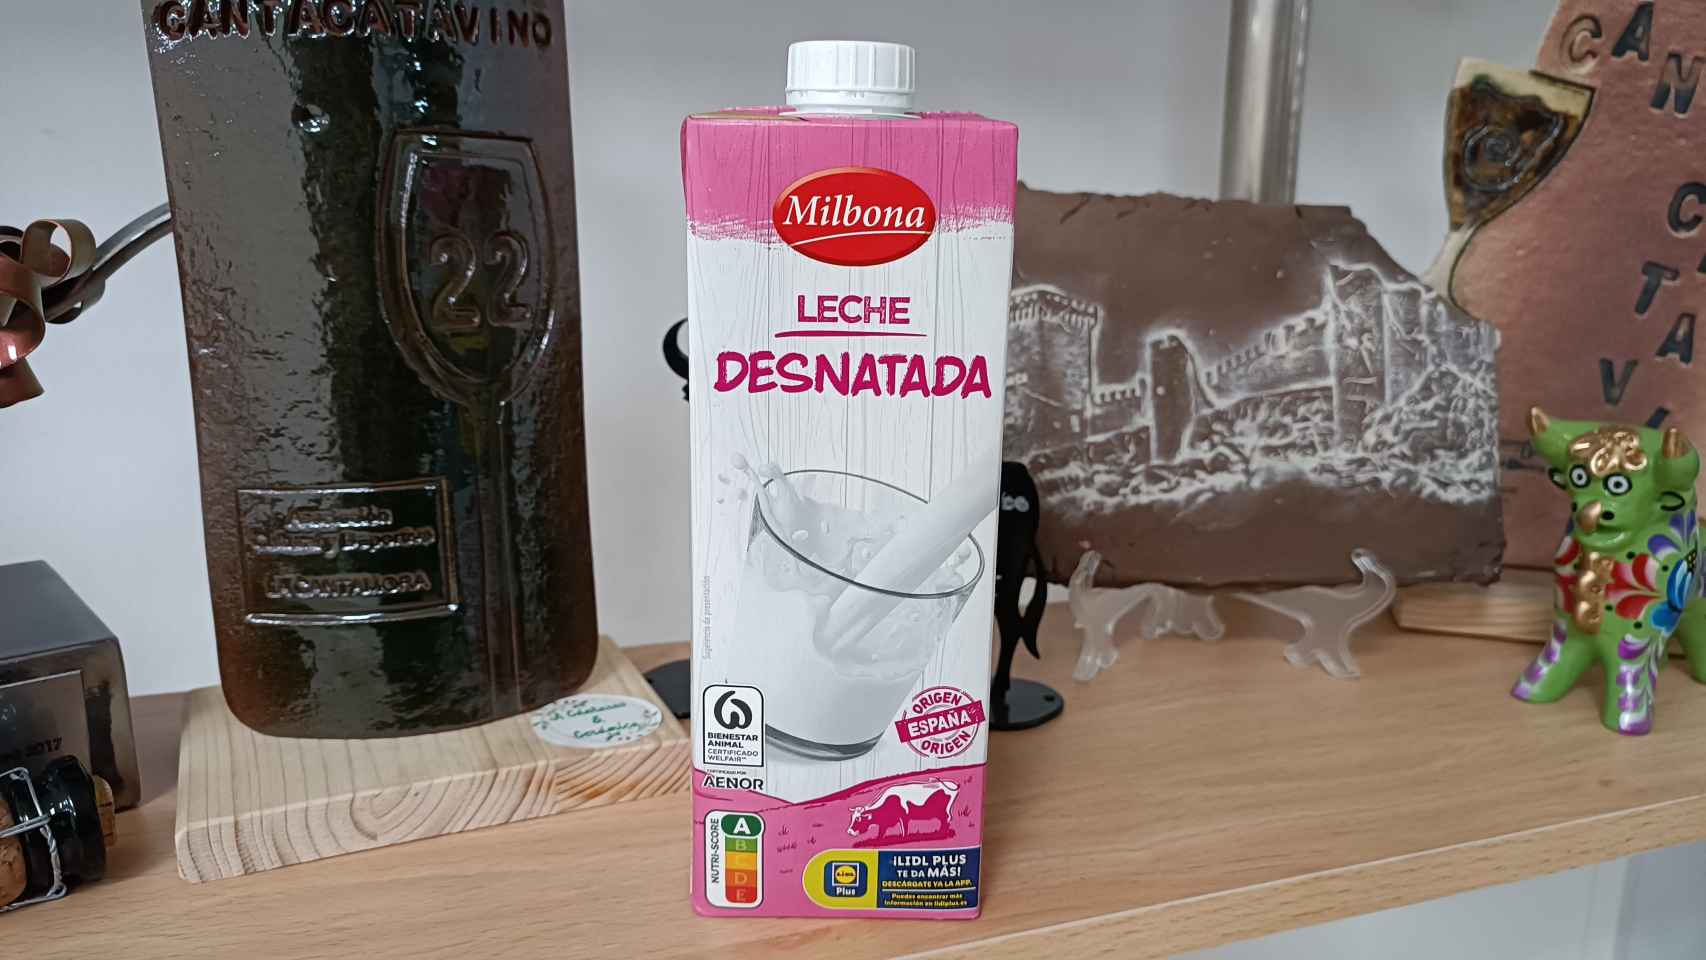 El brick de leche desnatada de Milbona, la marca blanca de productos lácteos de Lidl.